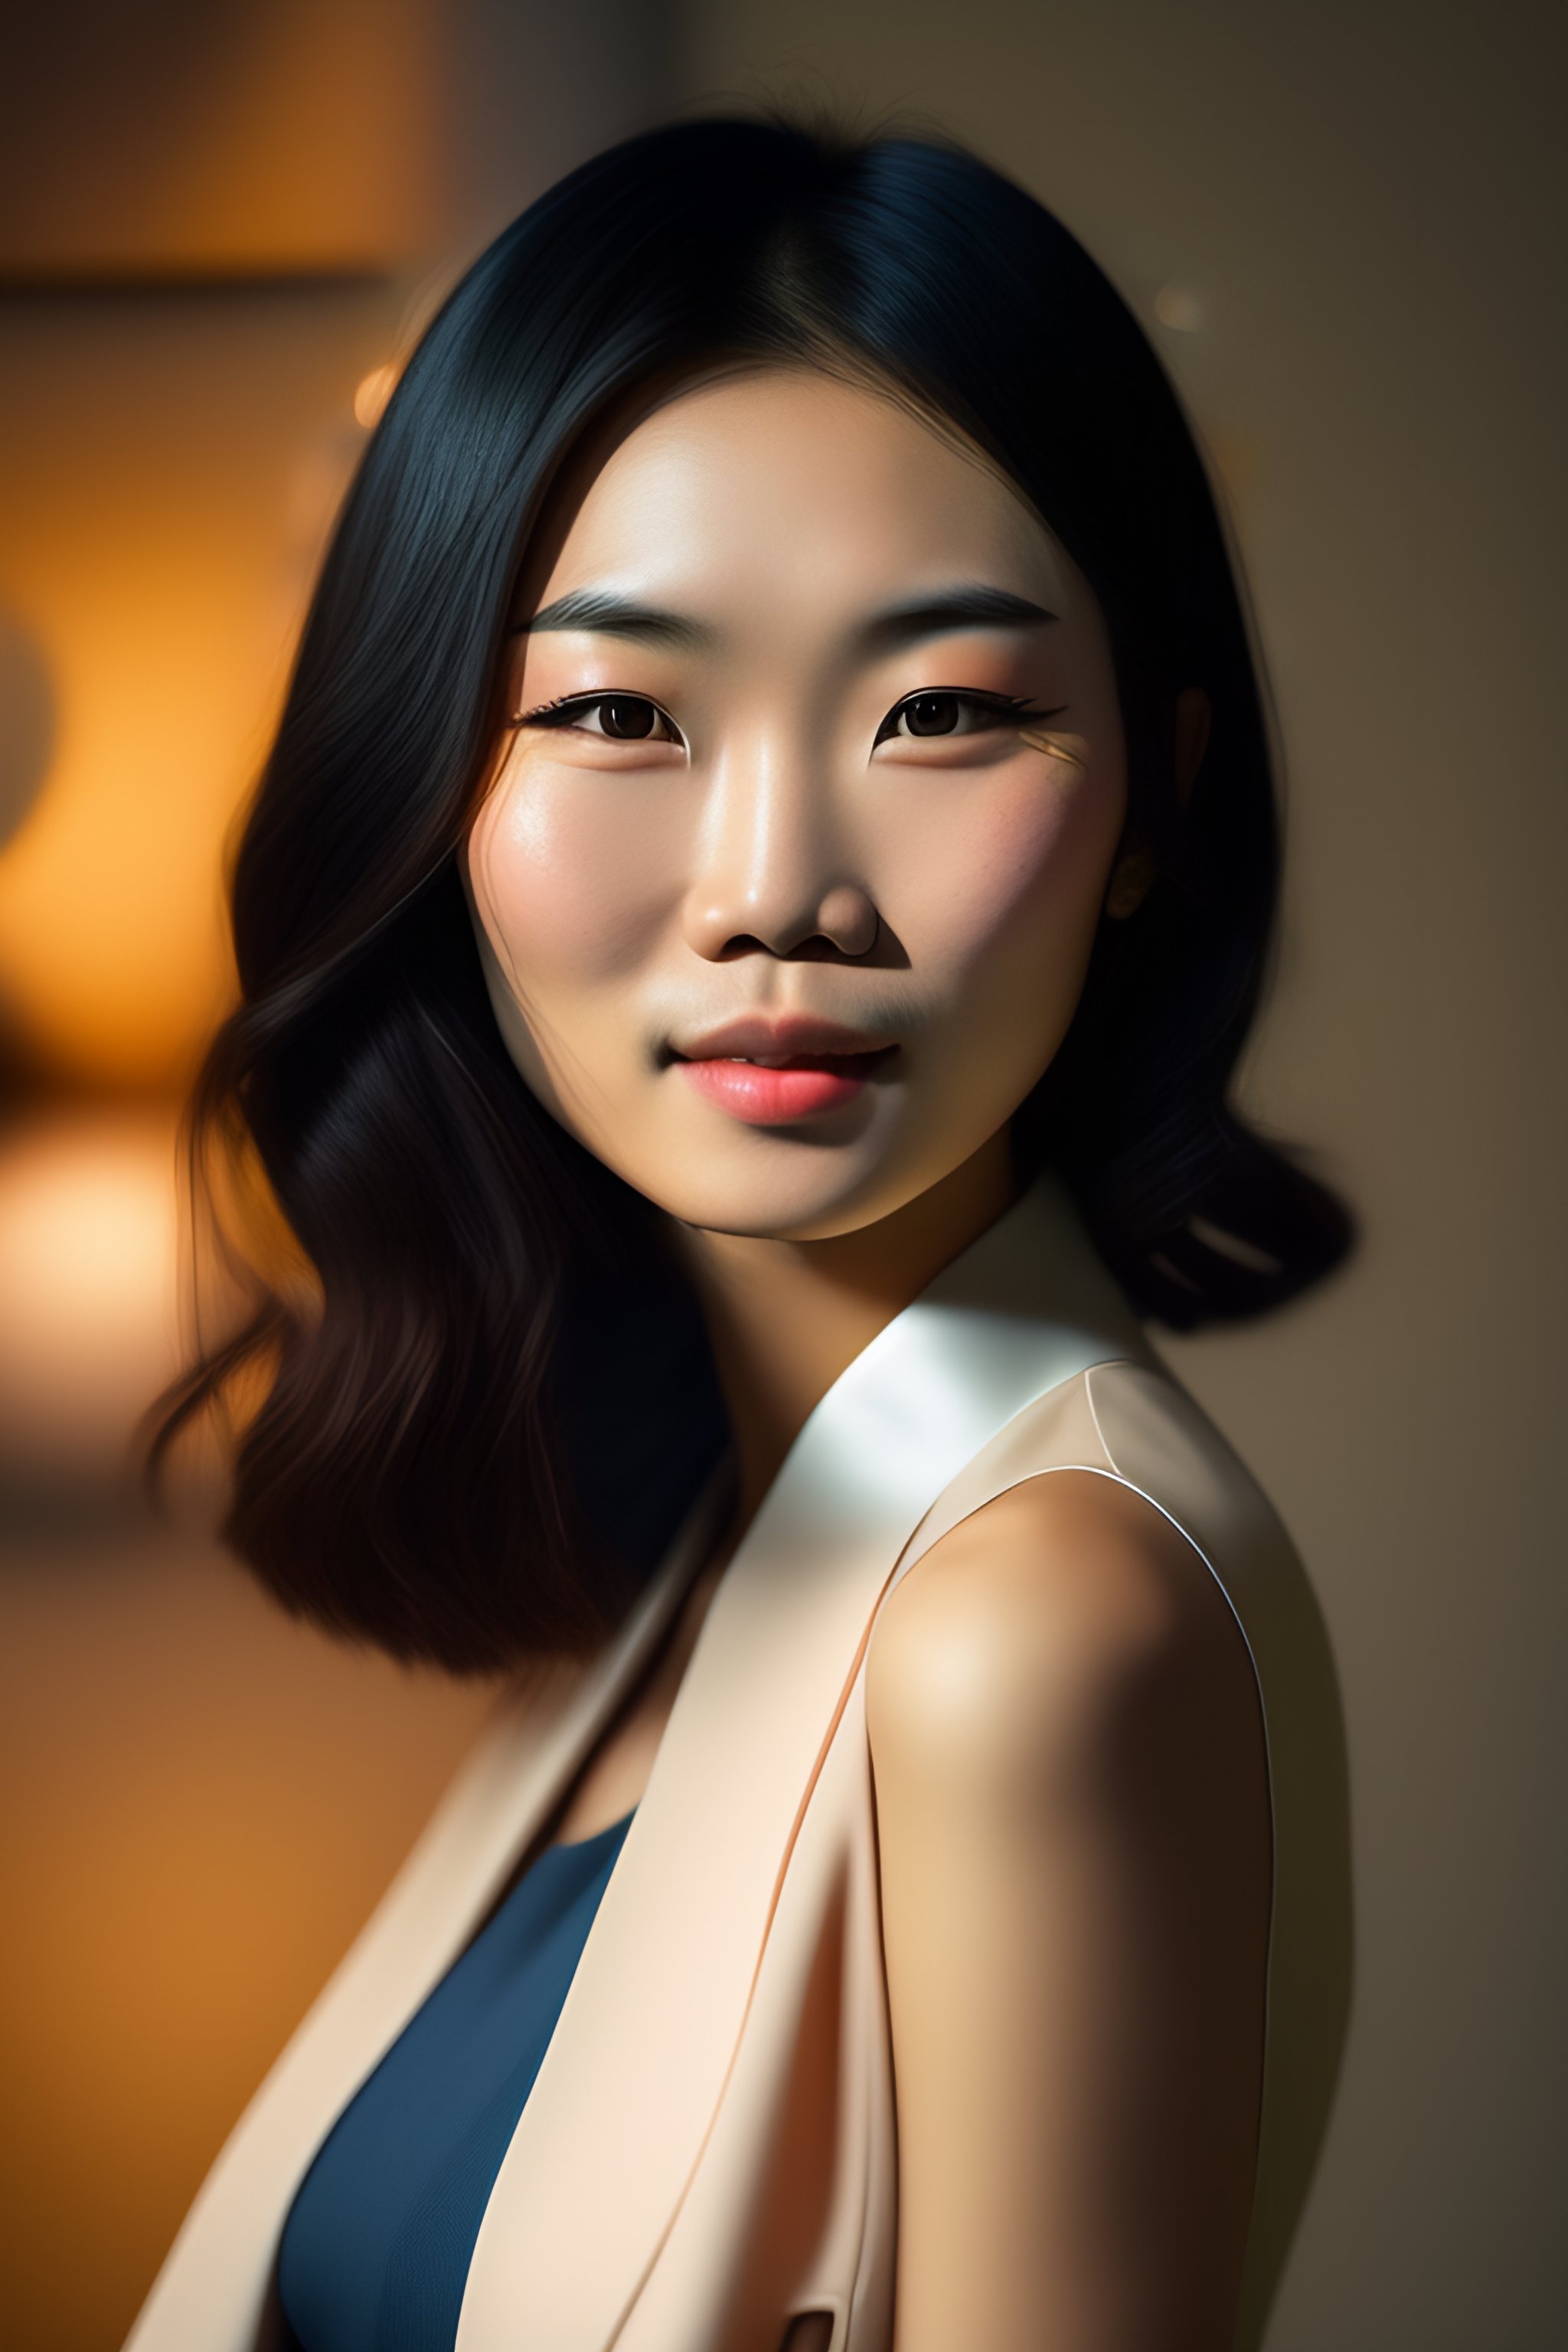 Lexica Cute Asian Girl And High Cheekbones 3551